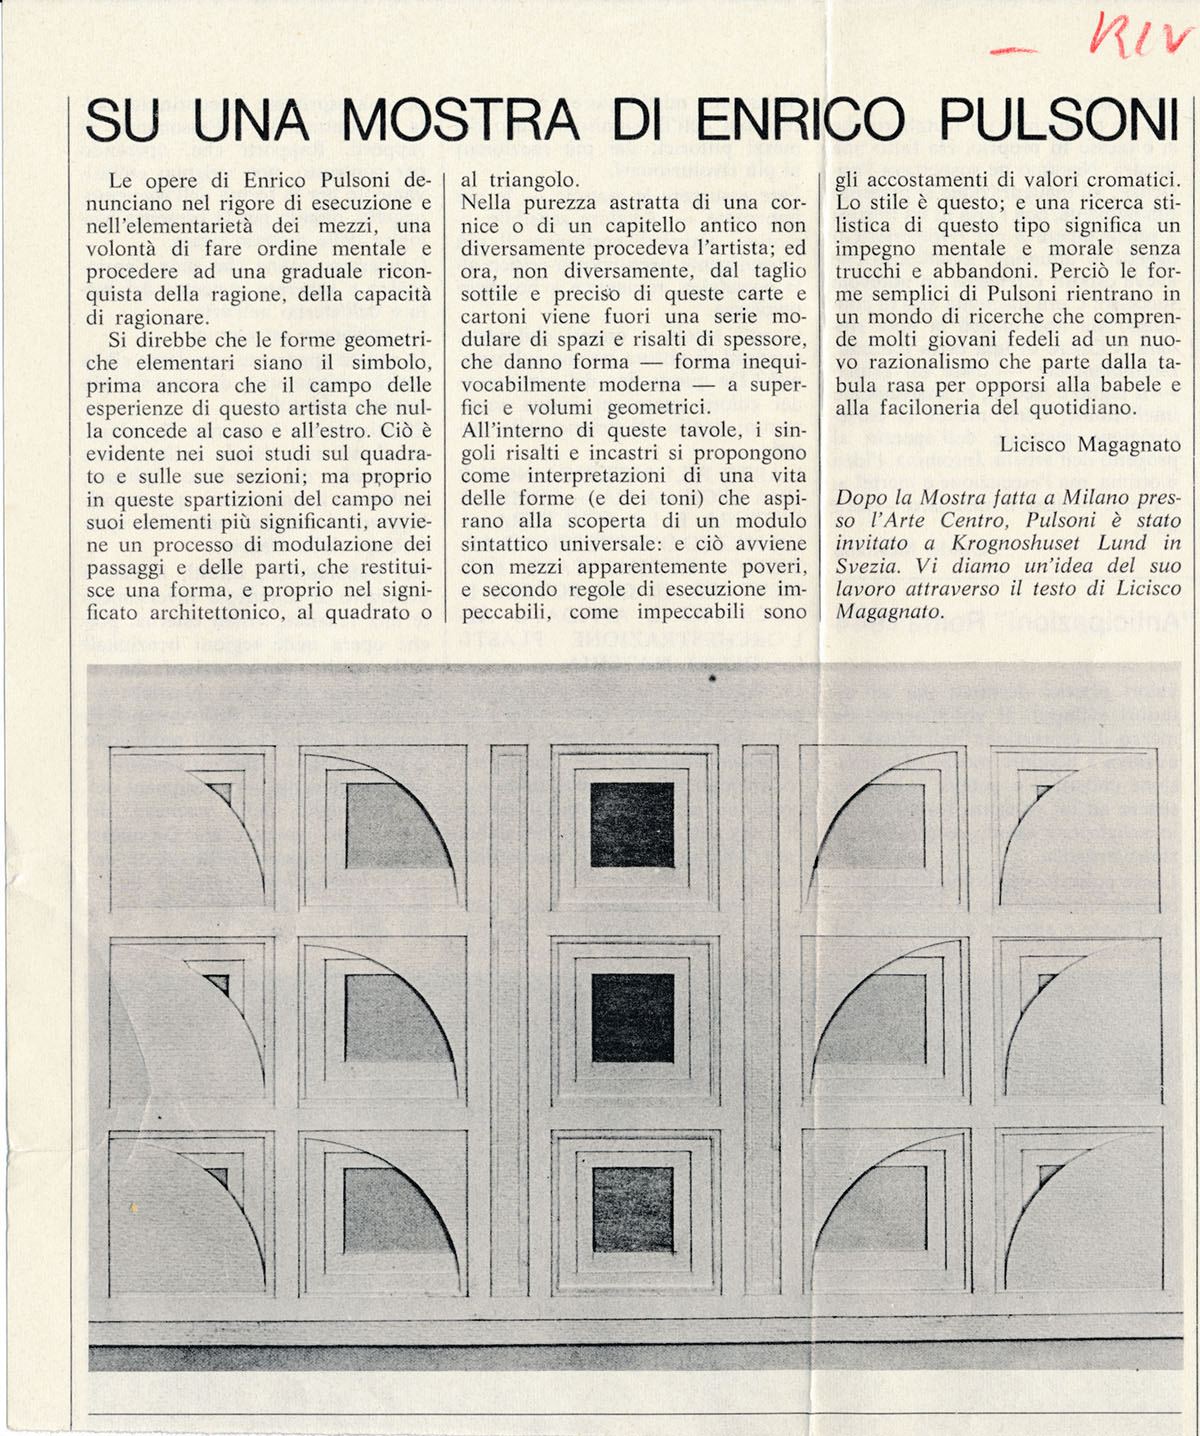 1978 Milano Galleria Arte centro L. Magagnato